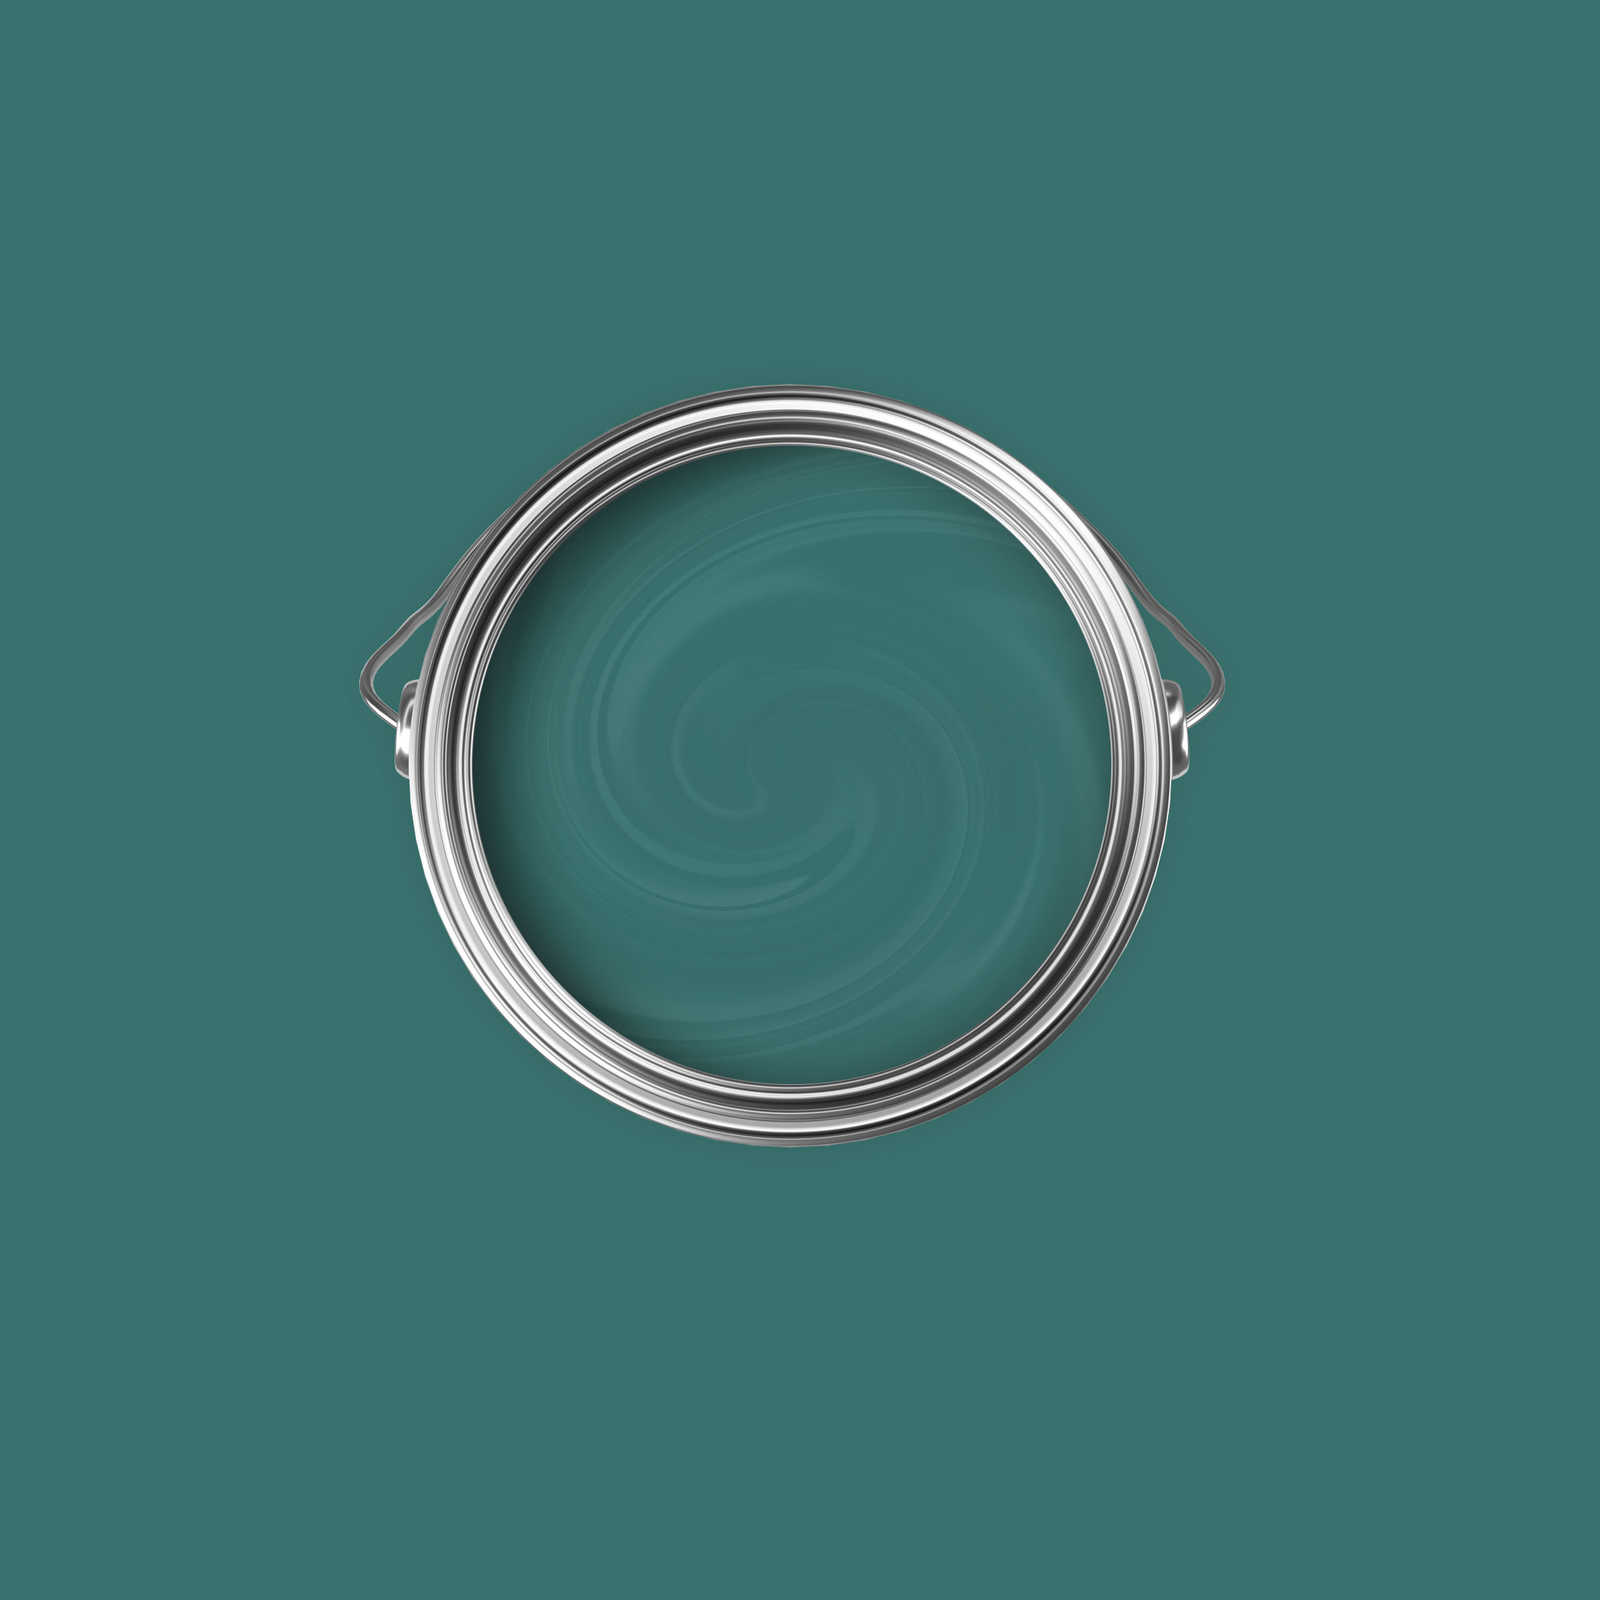             Premium Muurverf harmonisch blauwgroen »Expressive Emerald« NW411 – 2,5 liter
        